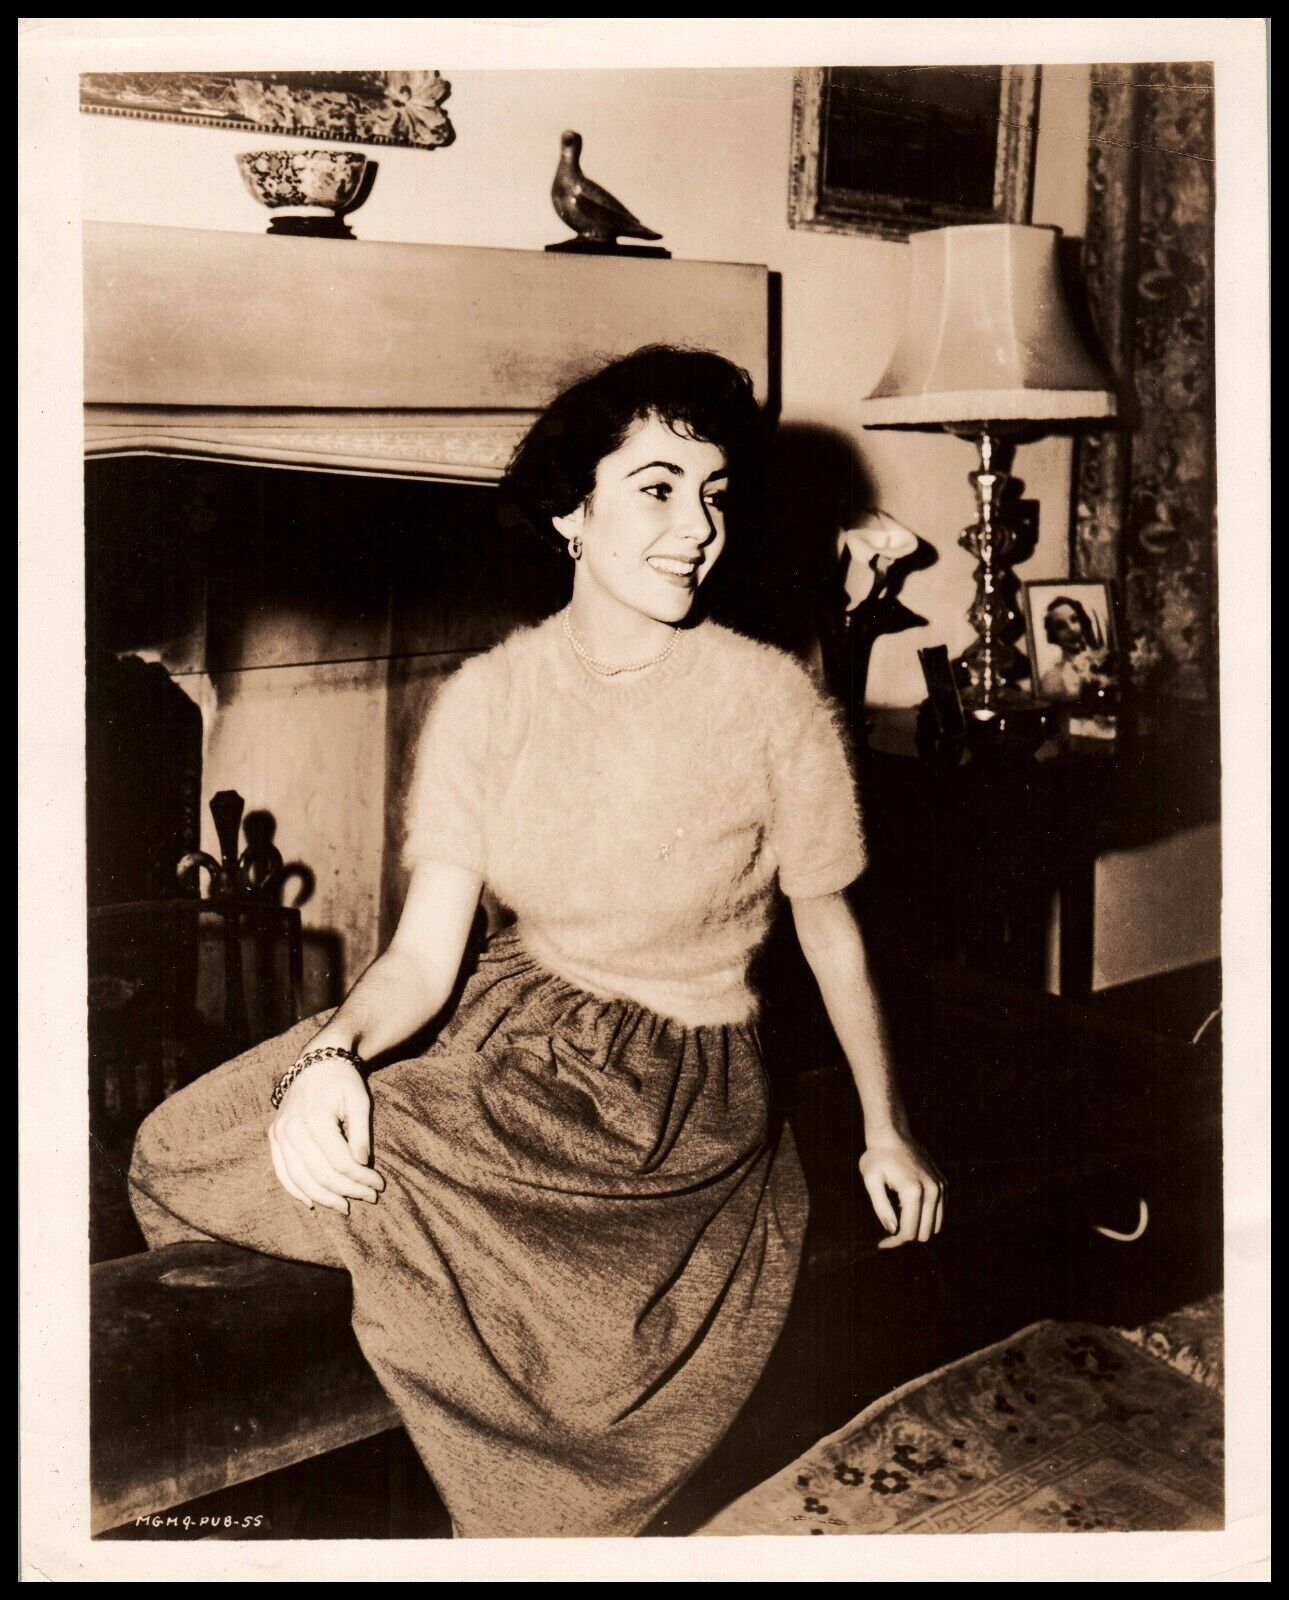 GLAMOROUS VIOLET-EYED ELIZABETH TAYLOR STYLISH POSE 1949 ORIGINAL PHOTO 592